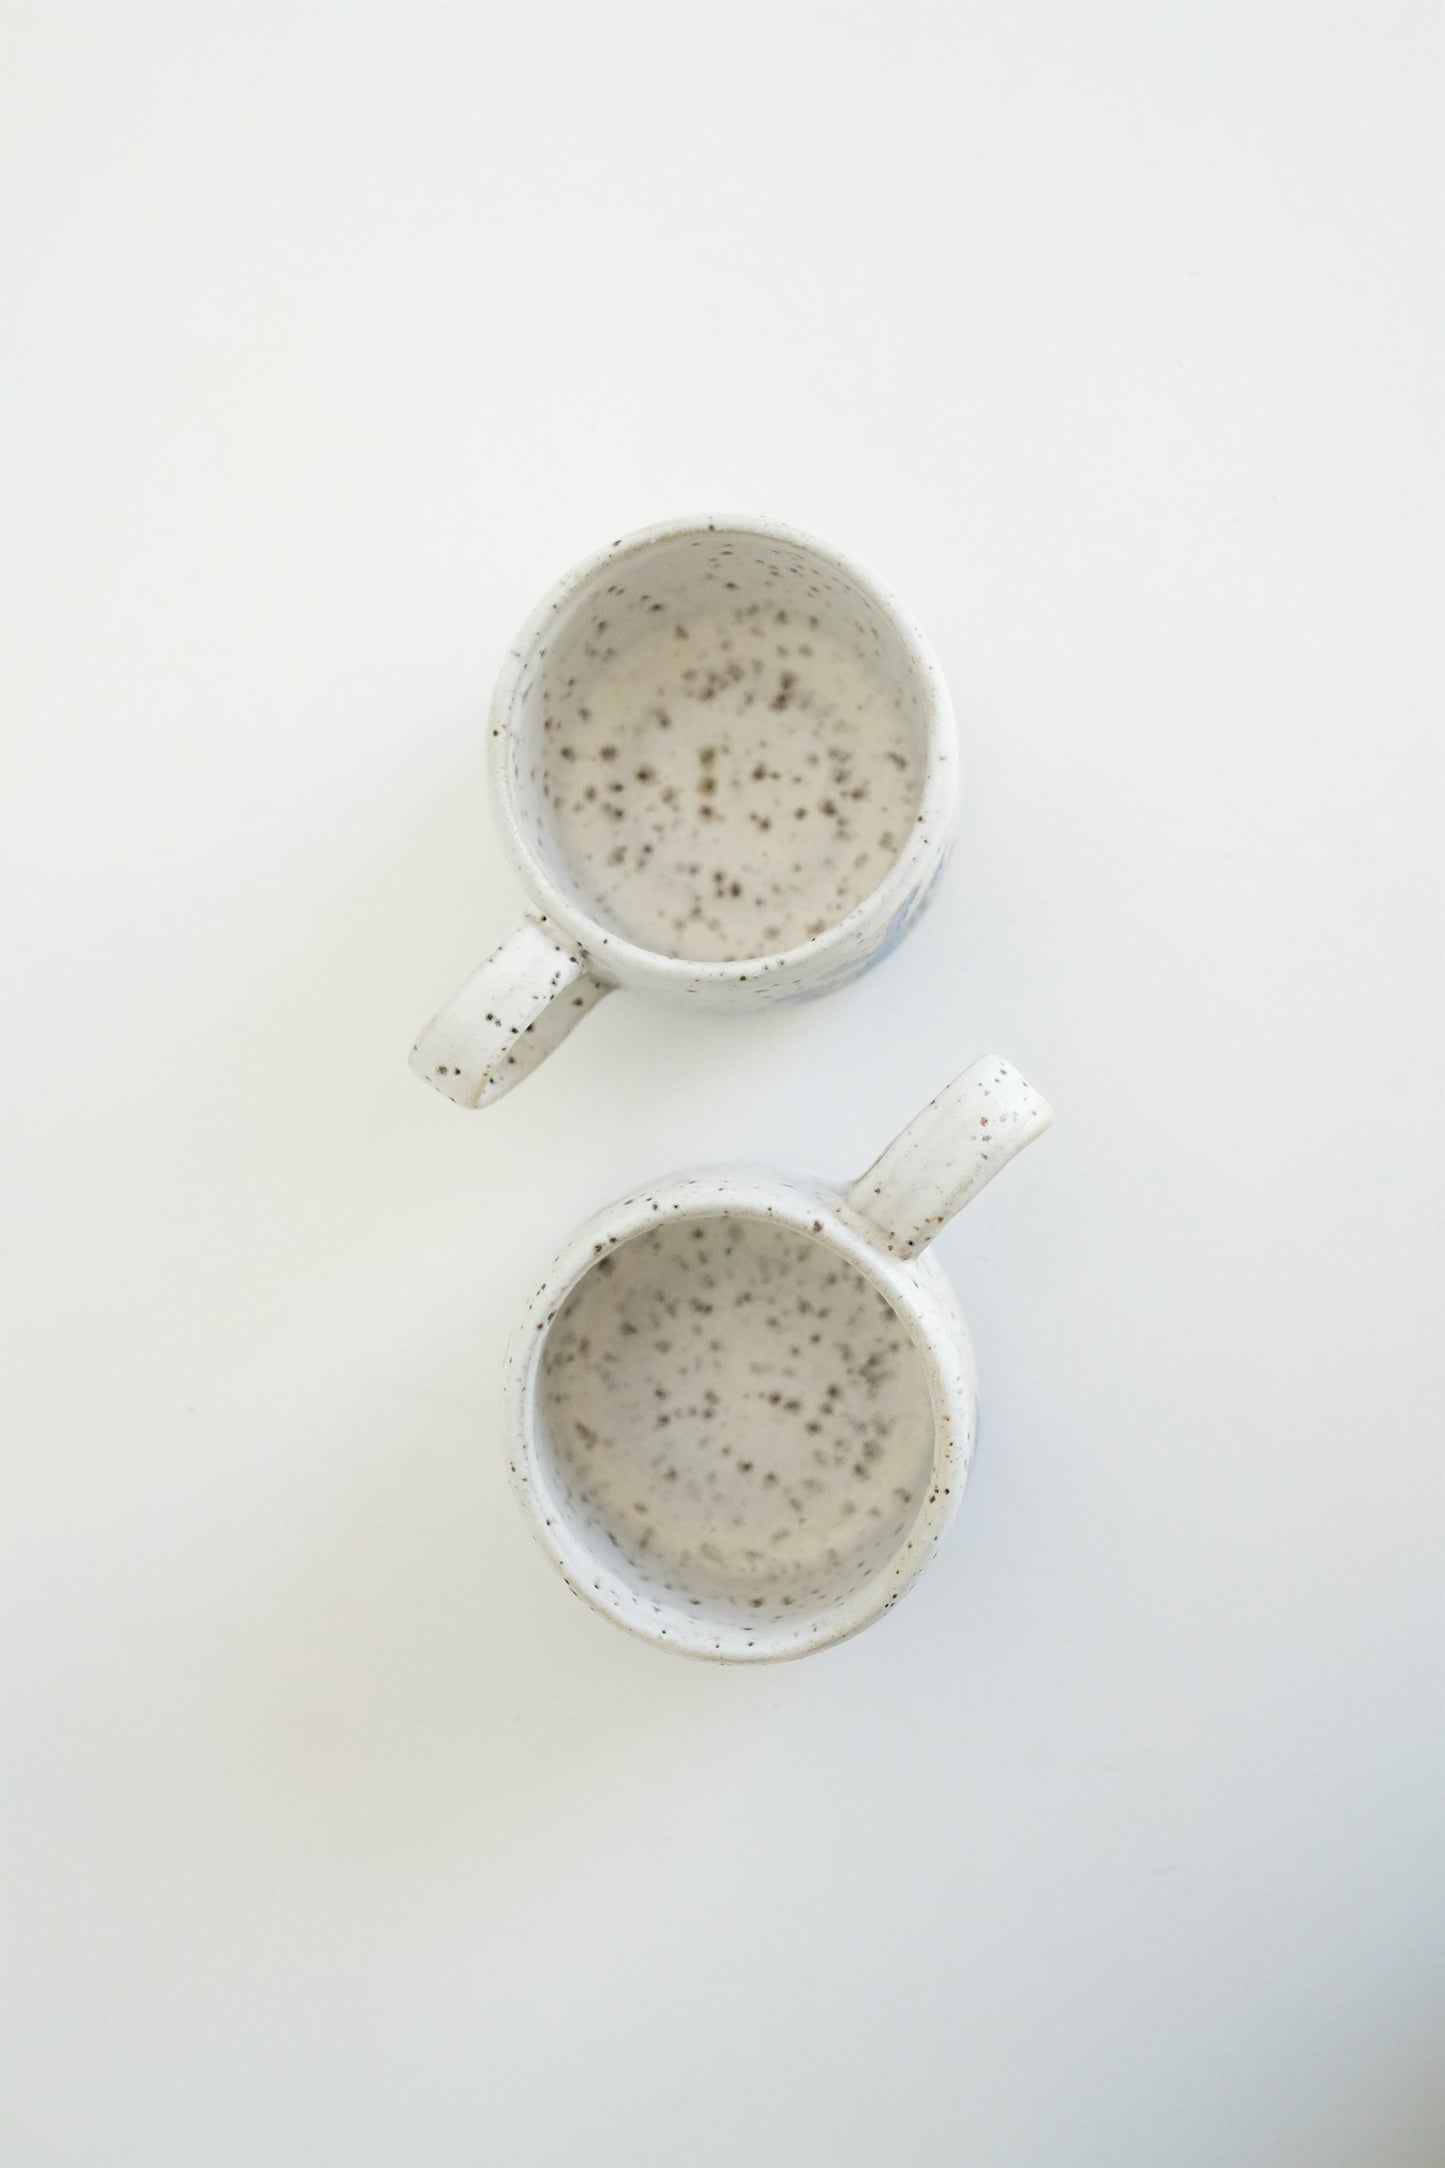 espresso mugs - set of 2